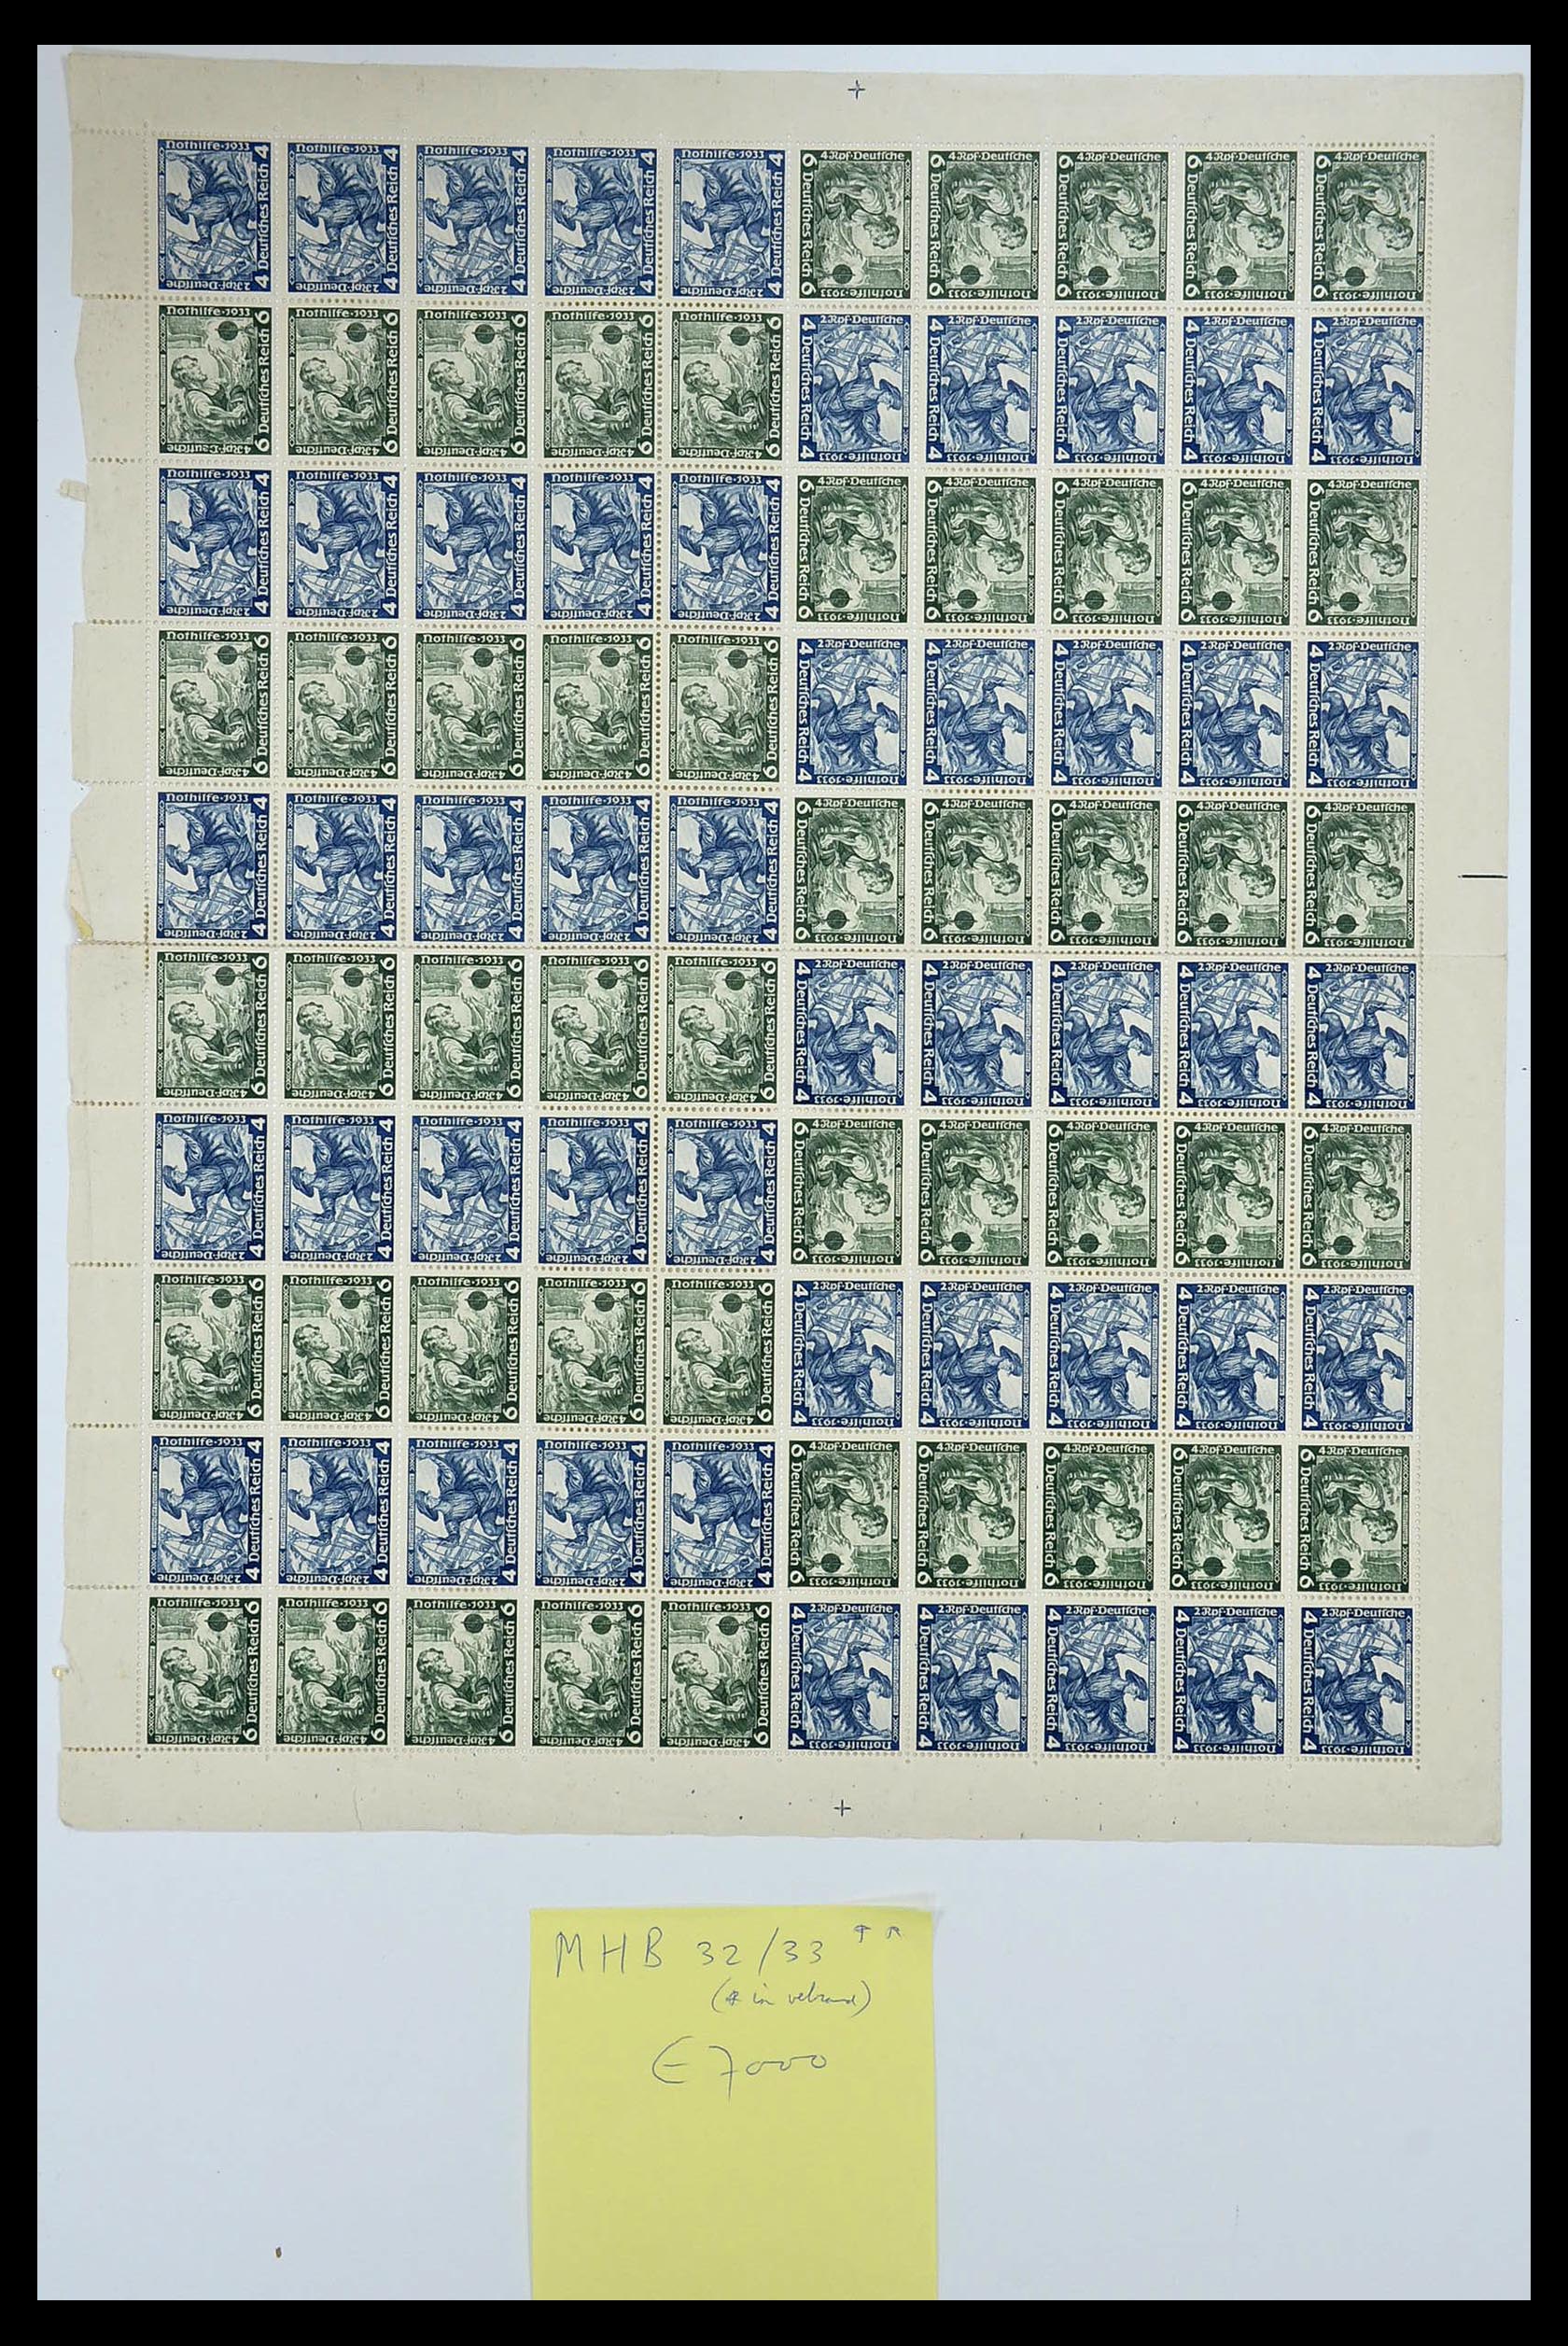 35075 005 - Stamp Collection 35075 German Reich Markenheftchenbogen 1933-1941.